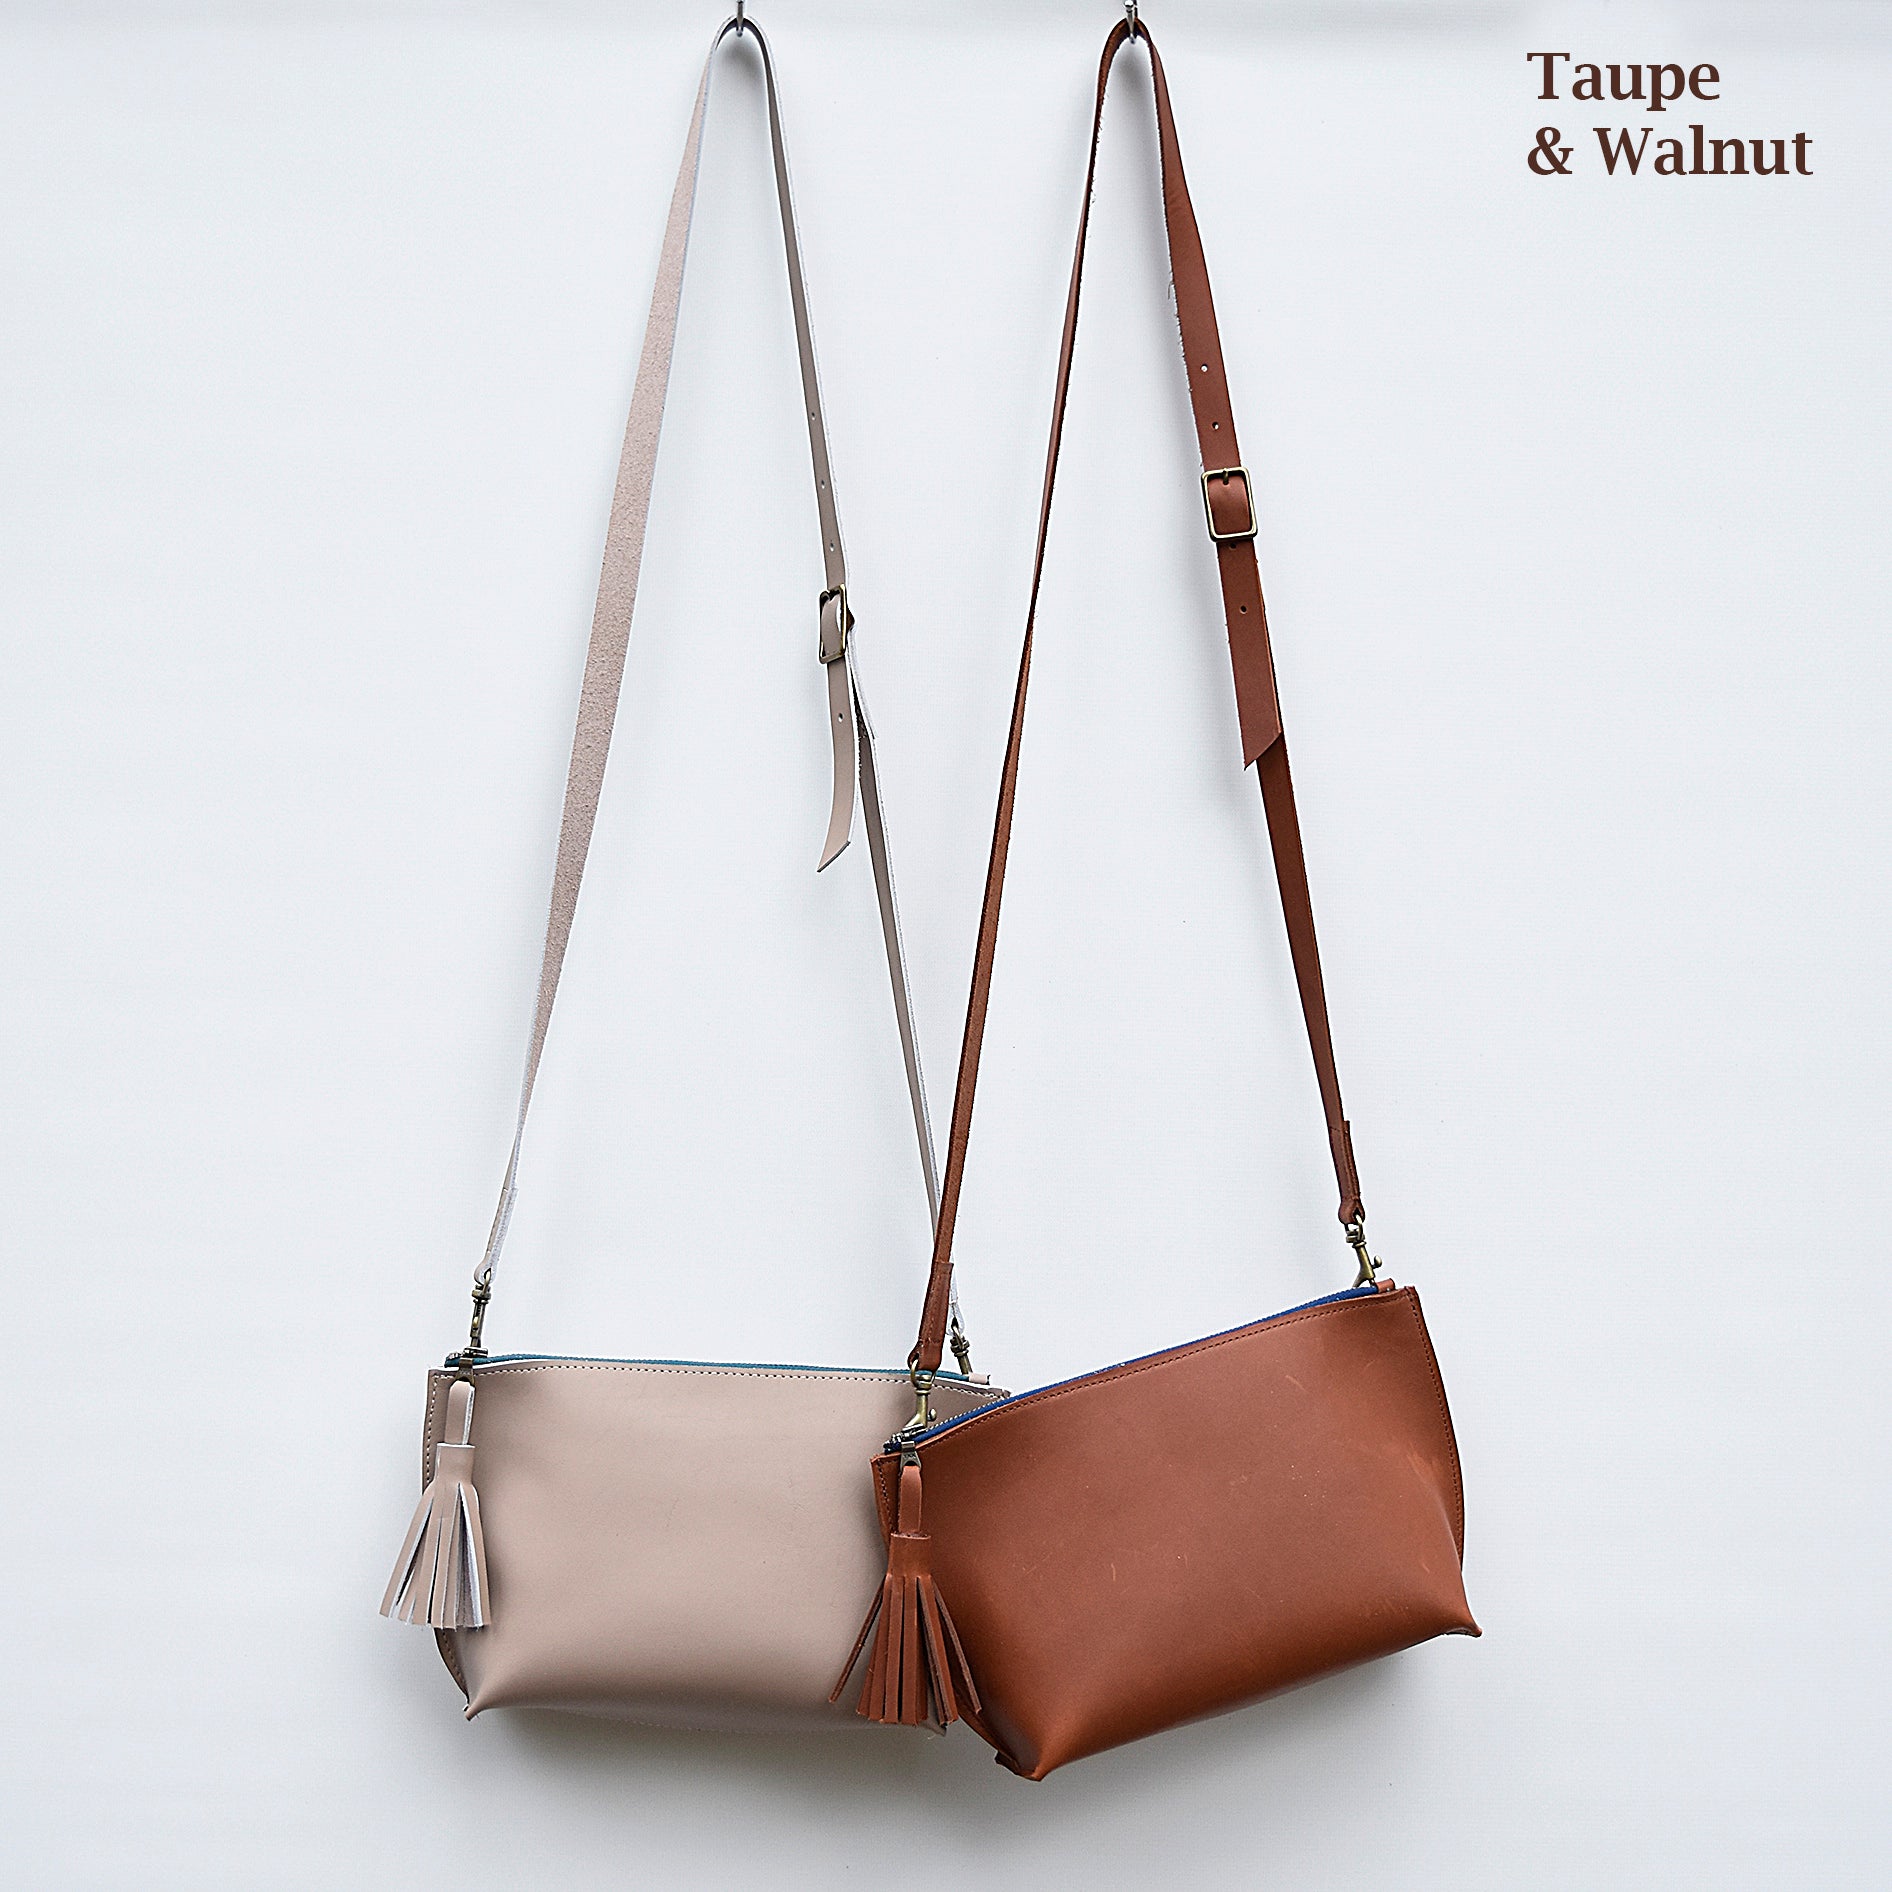 Brown Leather Tote Bag - Madison Collection | Buffalo Jackson